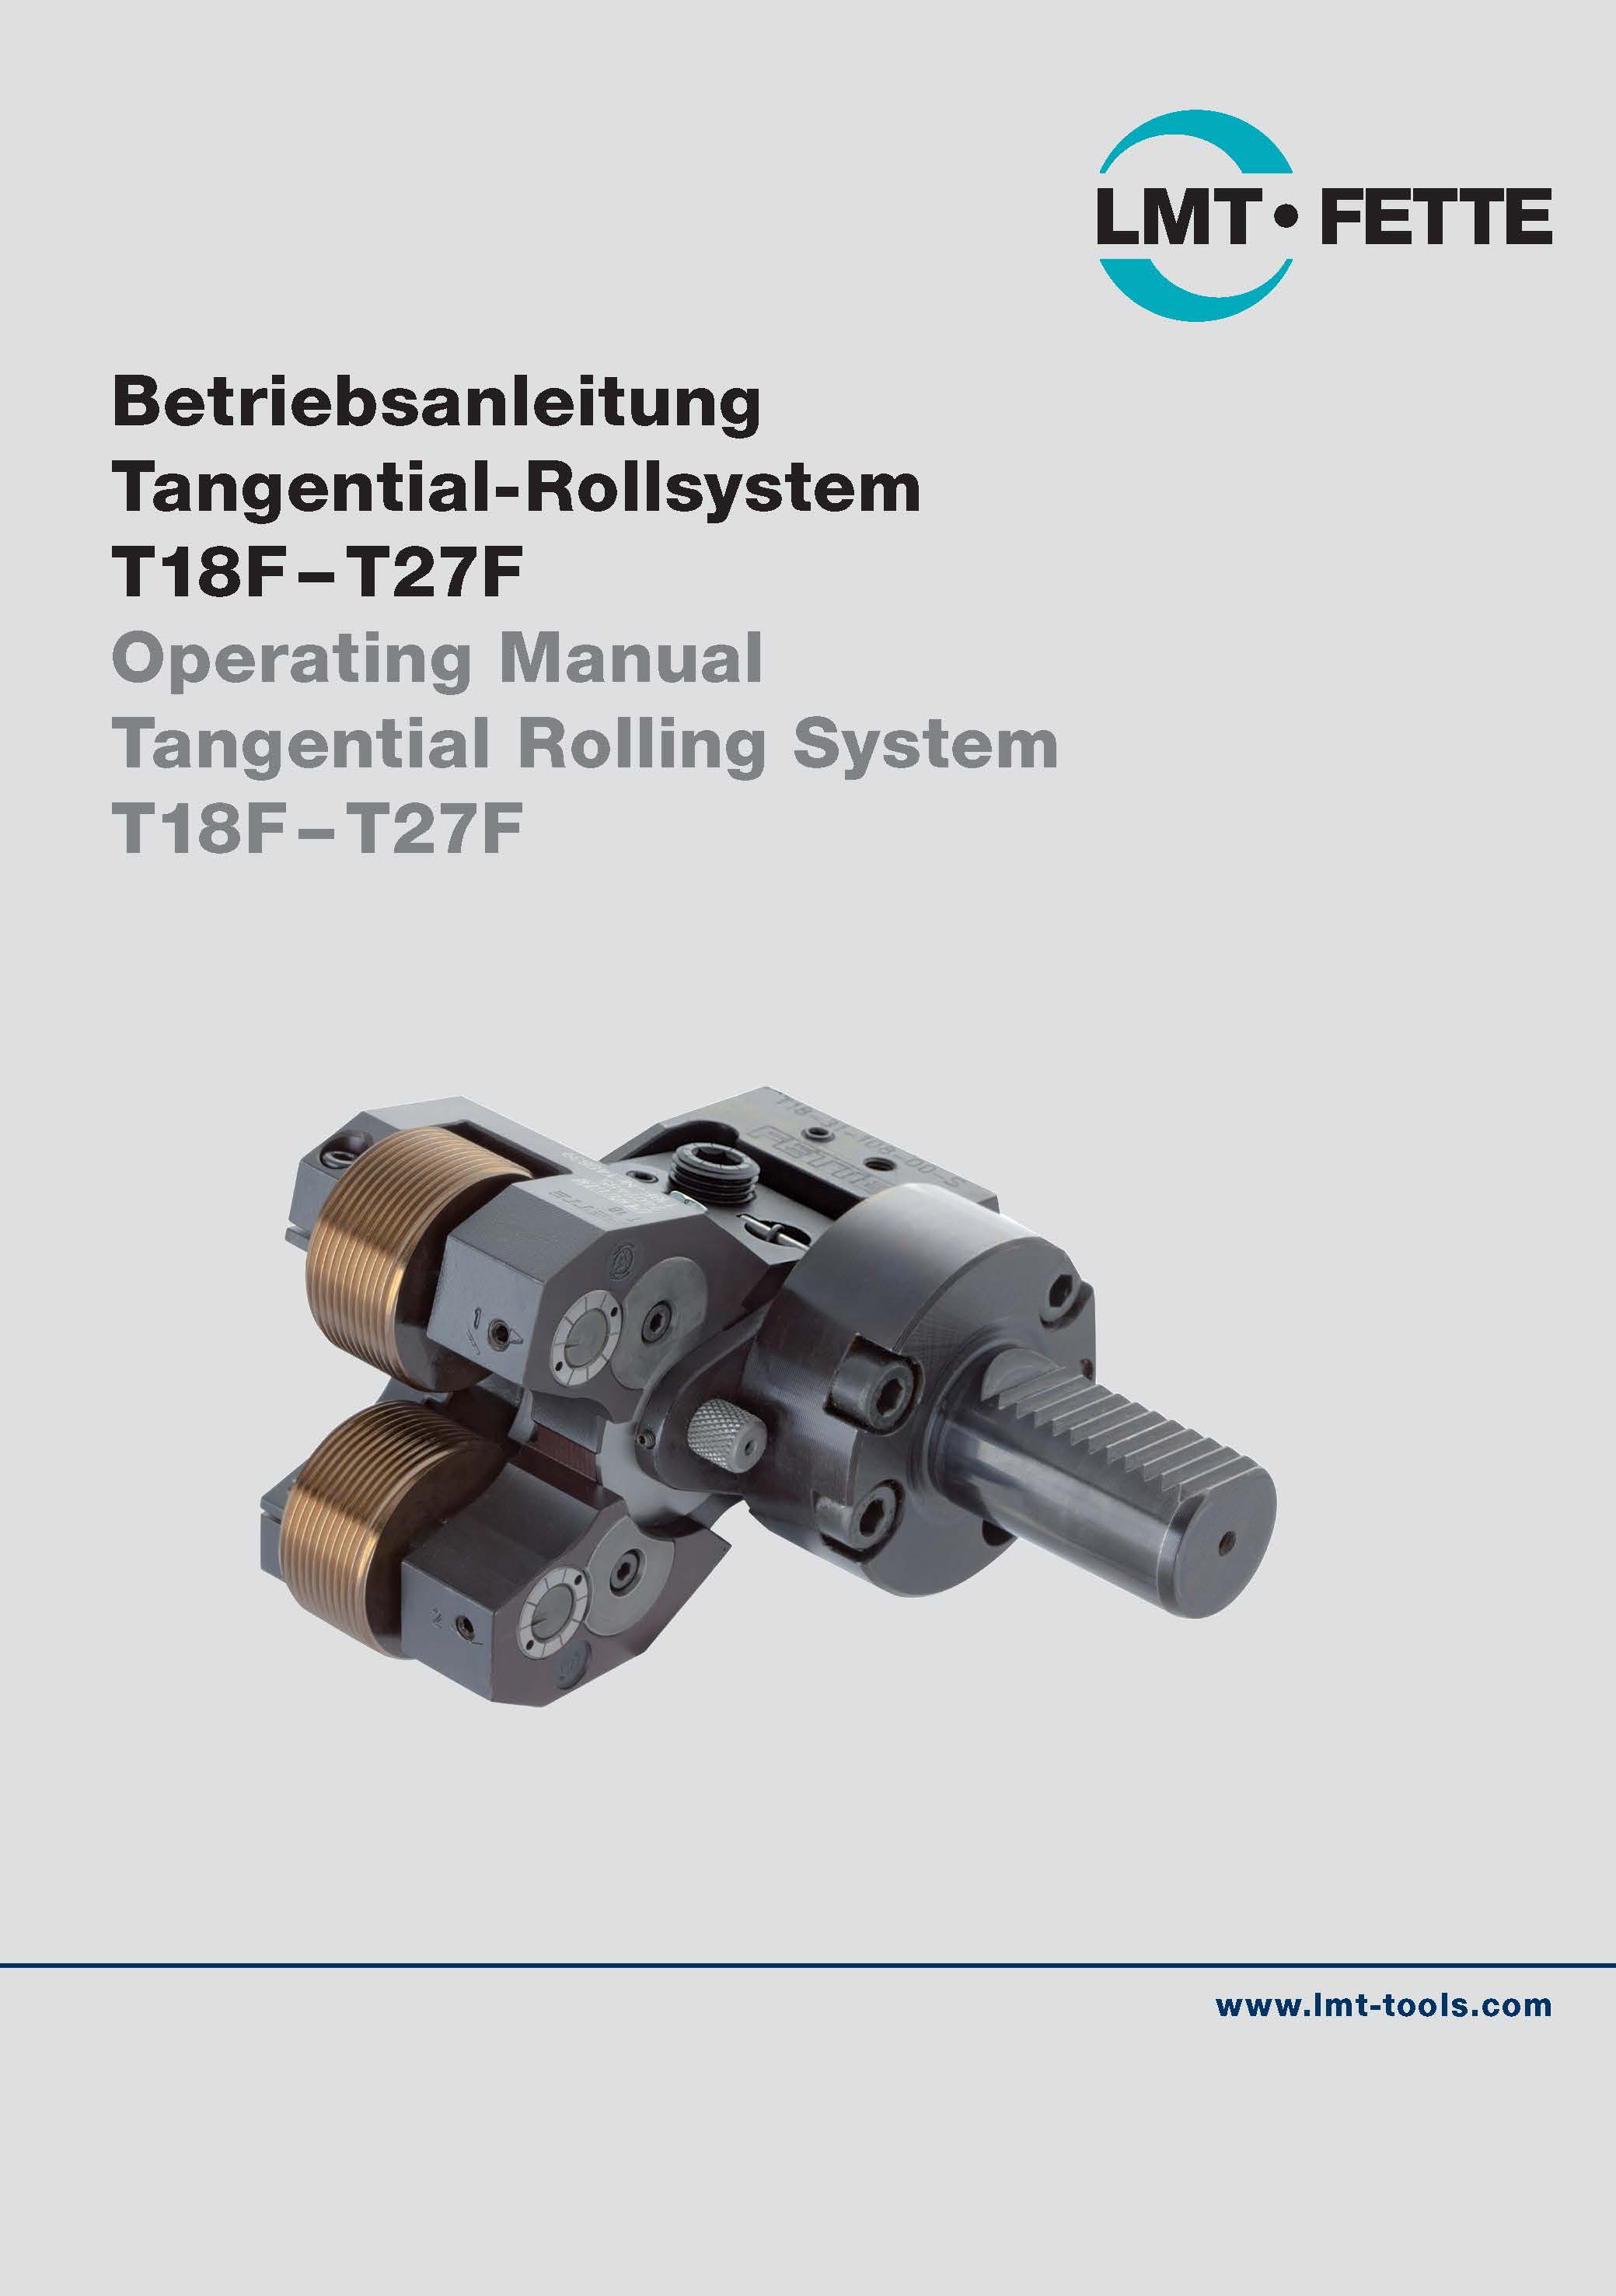 Betriebsanleitung Tangential-Rollsystem T18F-T27F